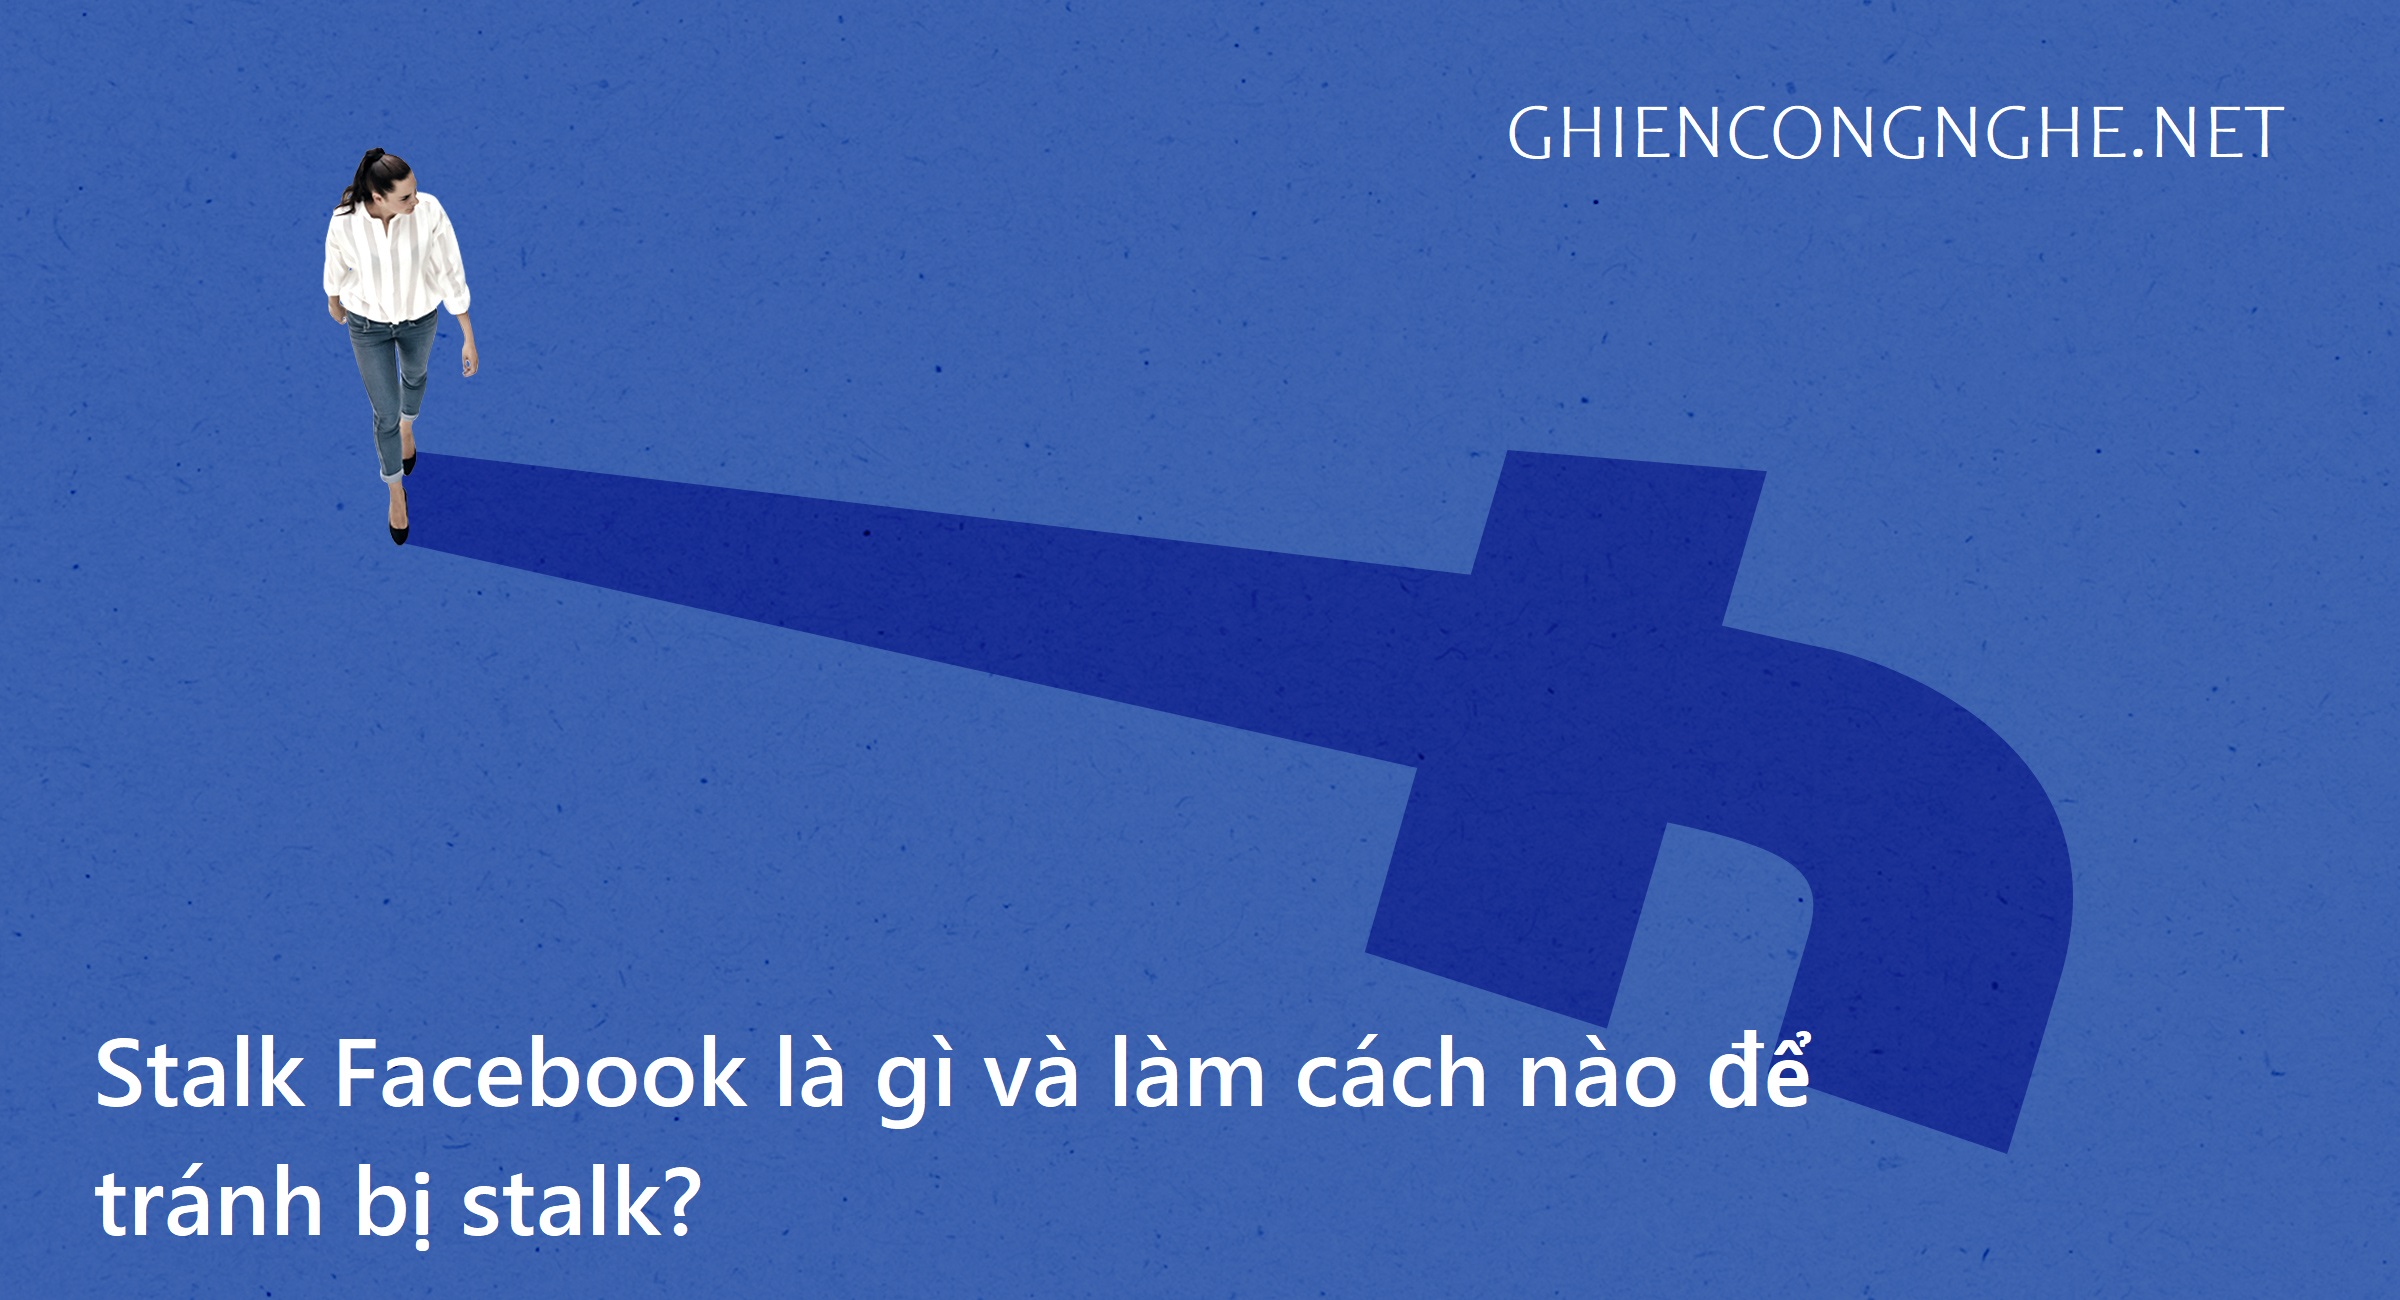 Stalk Facebook là gì, làm cách nào để tránh bị stalk? 1